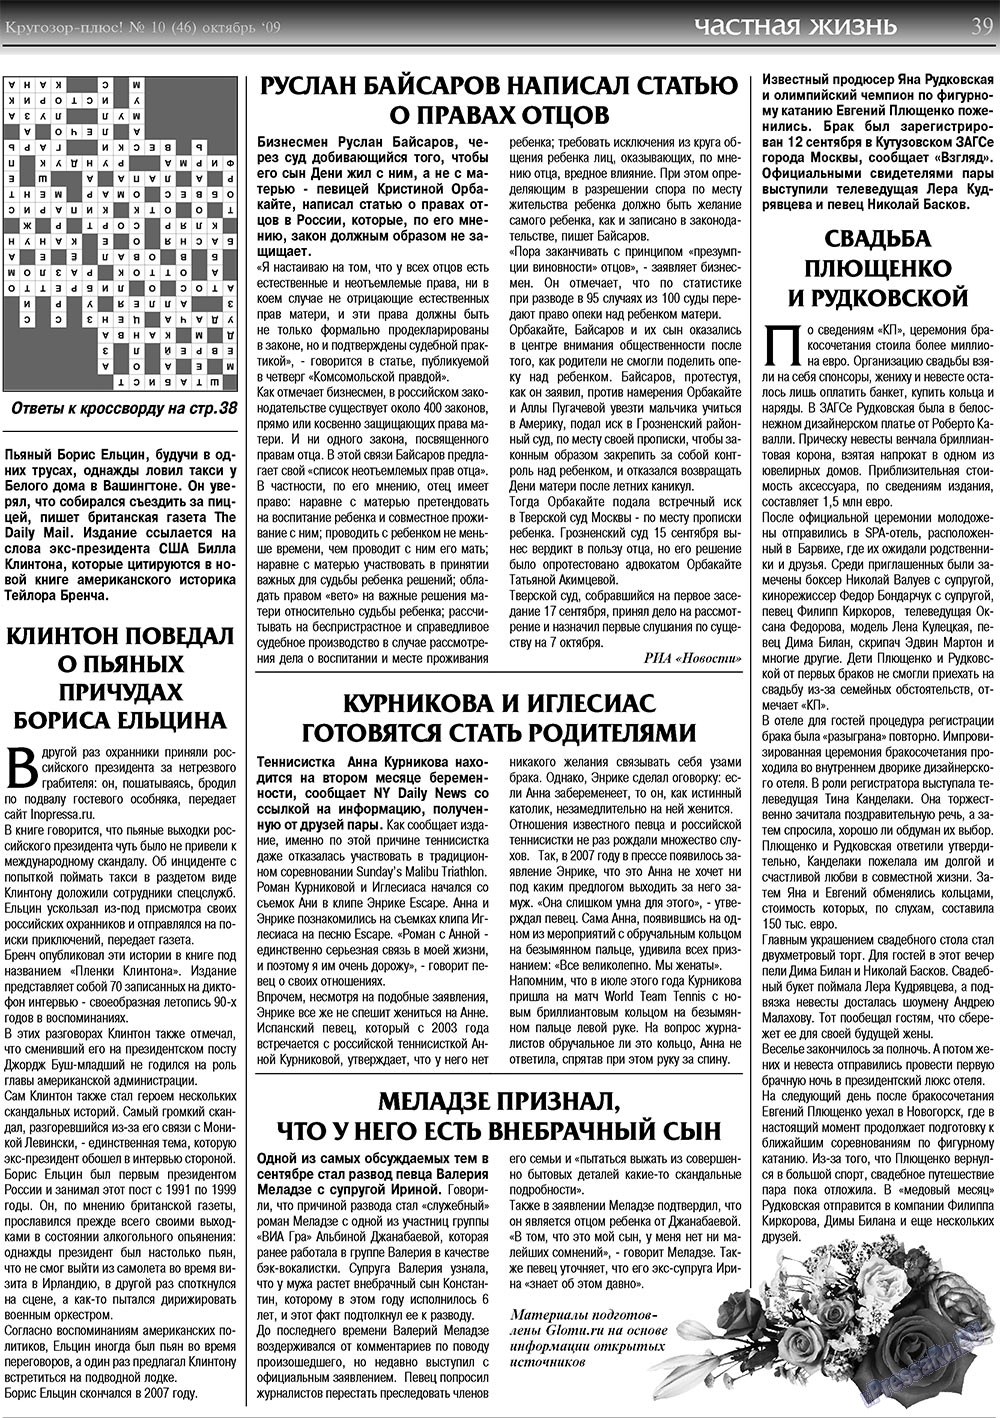 Кругозор плюс!, газета. 2009 №10 стр.39